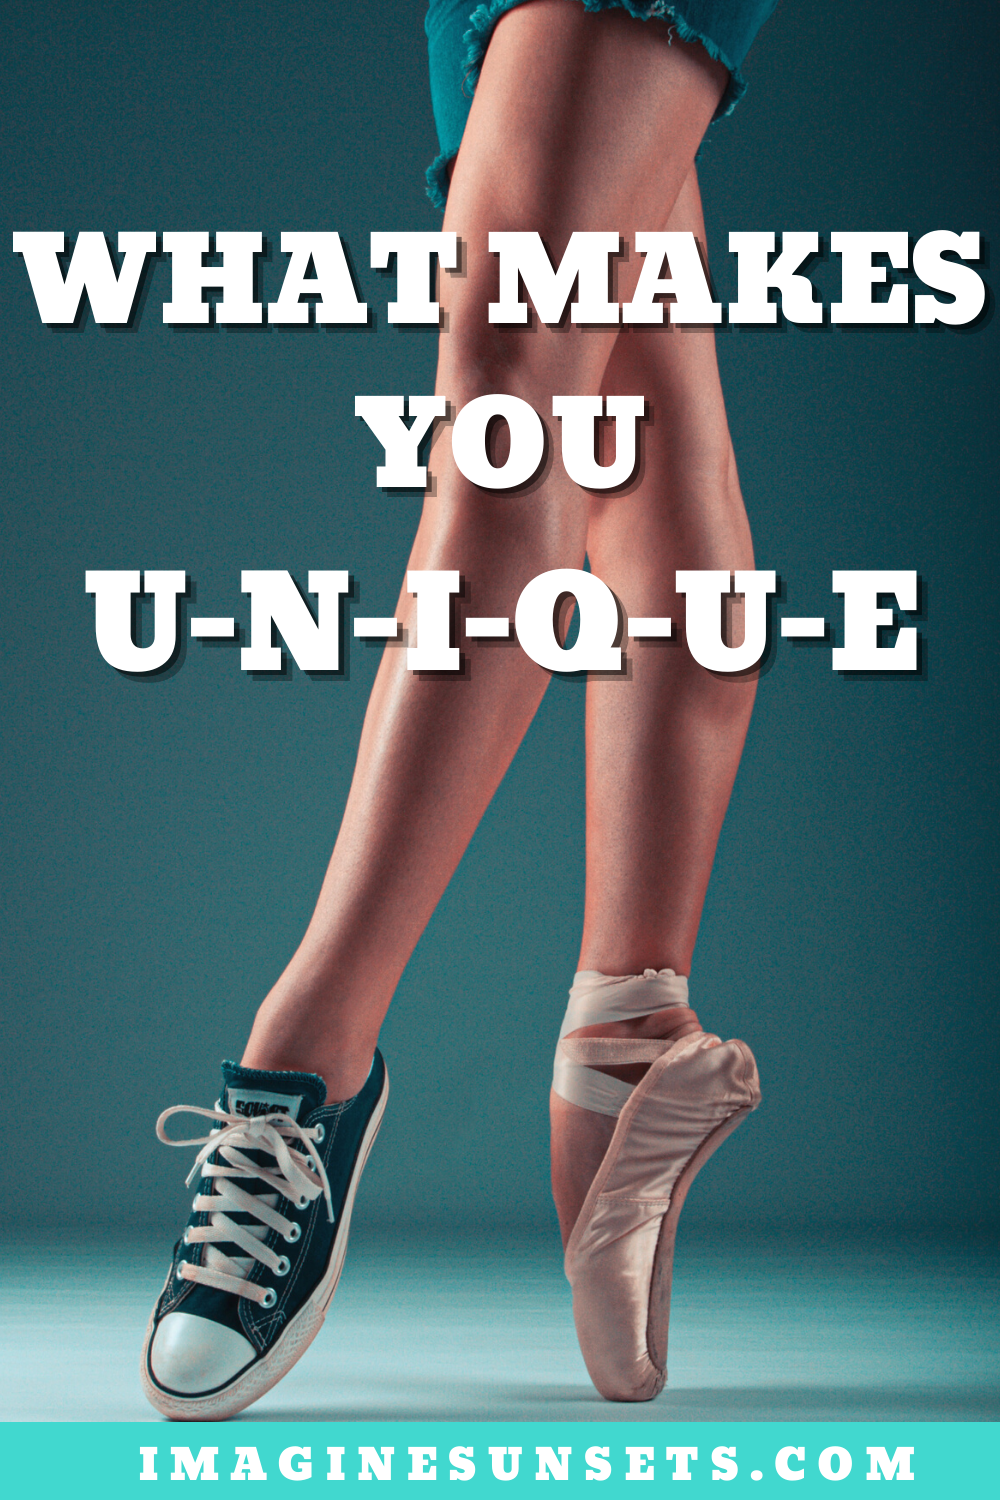 What makes you unique